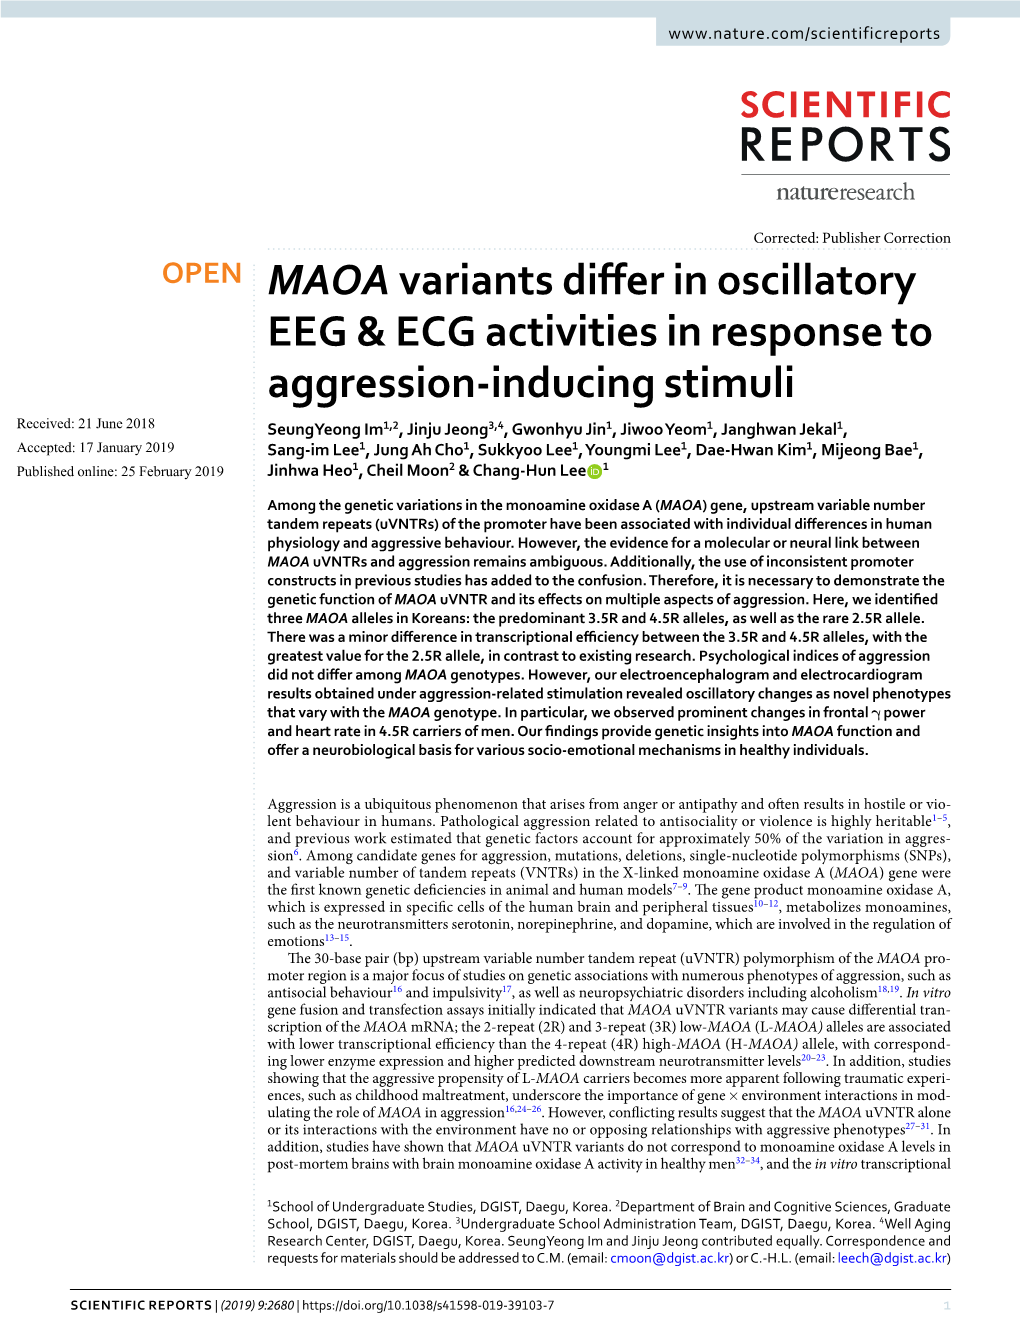 MAOA Variants Differ in Oscillatory EEG & ECG Activities in Response To